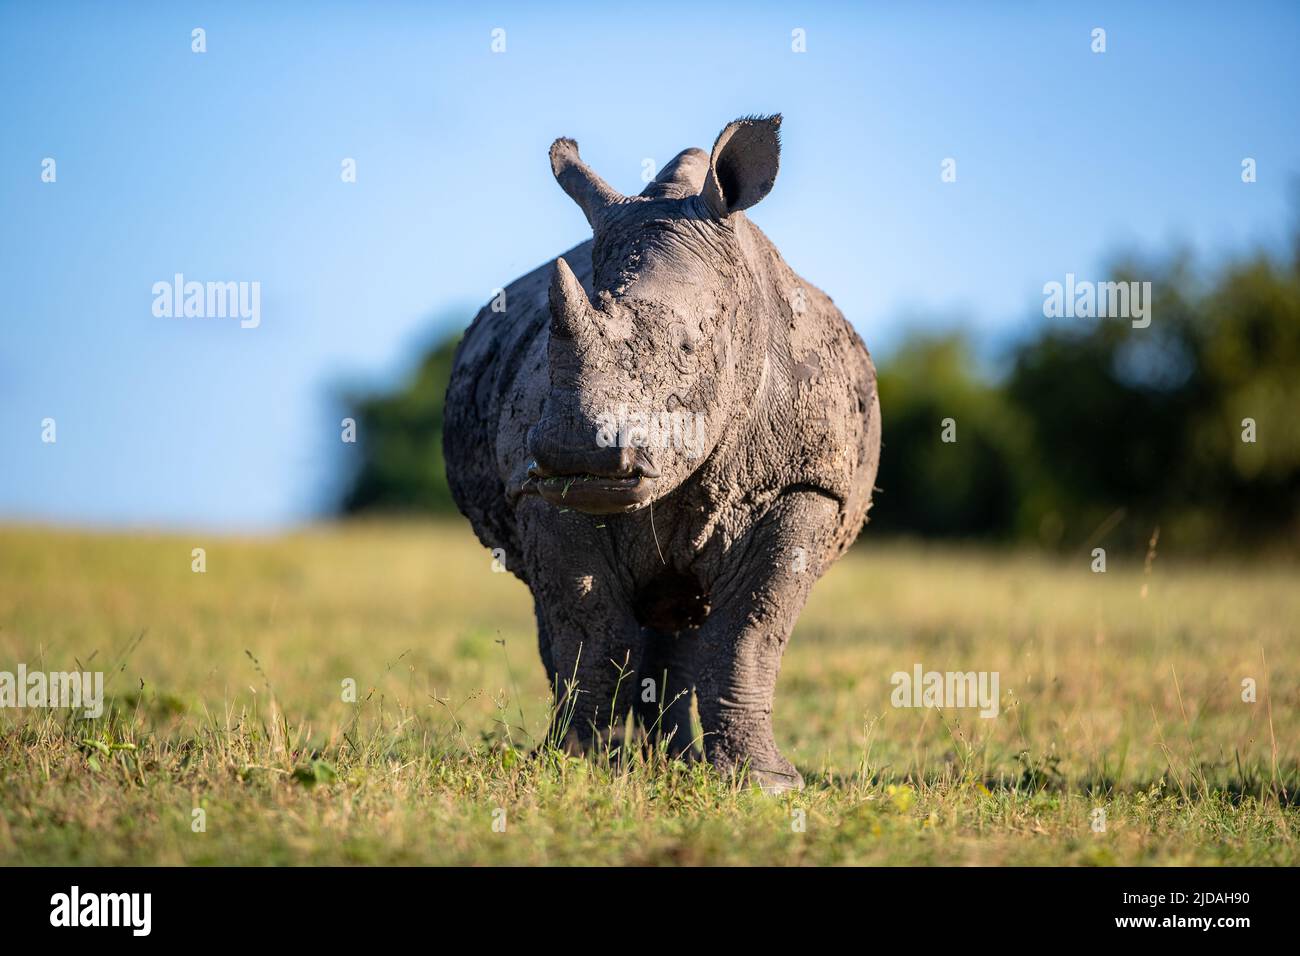 Un rhinocéros blanc, Ceratotherium simum, se grise sur une herbe courte et regarde vers le haut Banque D'Images